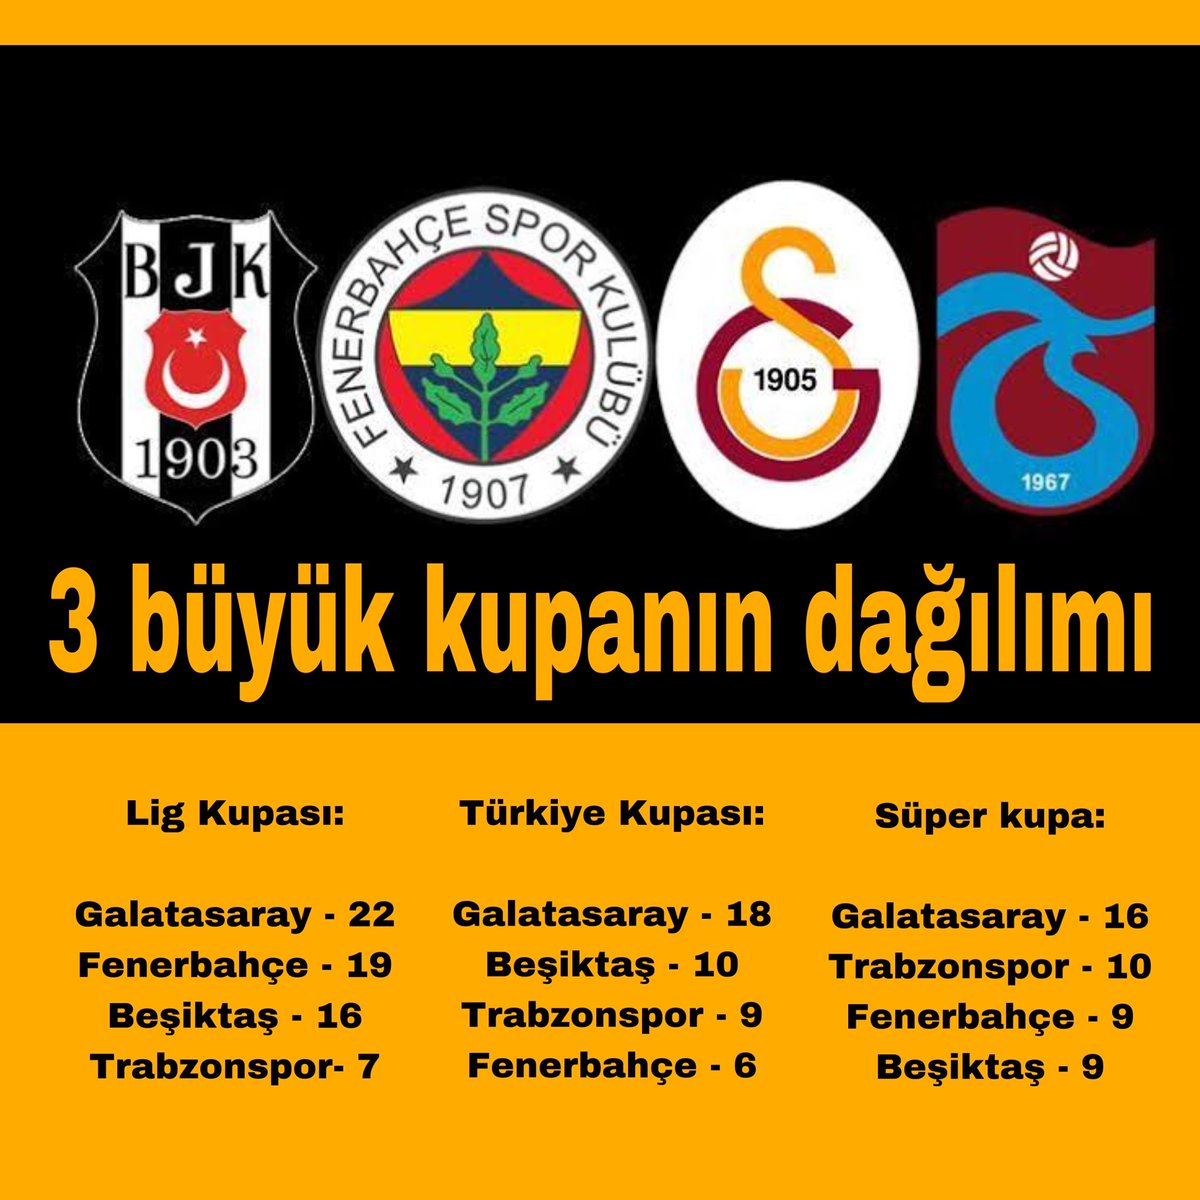 3 büyük kupanın dağılımı 

#LigKupası:

#Galatasaray - 22
#Fenerbahçe - 19
#Beşiktaş - 16
#Trabzonspor- 7

#TürkiyeKupası:

#Galatasaray - 18
#Beşiktaş - 10
#Trabzonspor - 9
#Fenerbahçe - 6

#Süperkupa:

#Galatasaray - 16
#Trabzonspor - 10
#Fenerbahçe - 9
#Beşiktaş - 9